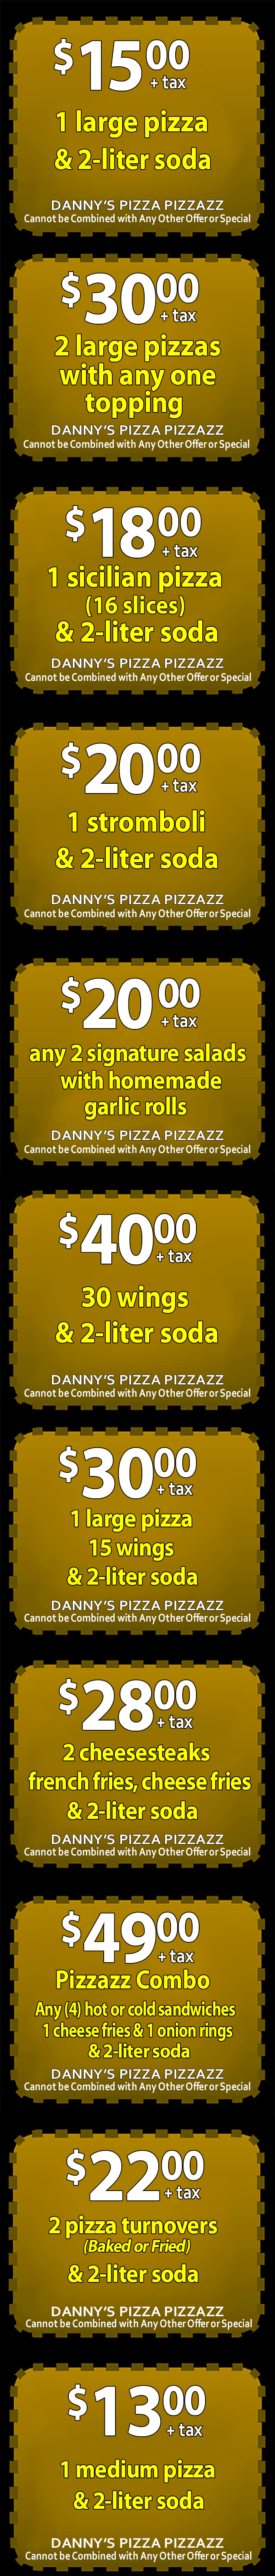 dannys-pizza-pizzazz-franklinville-nj mobile coupons